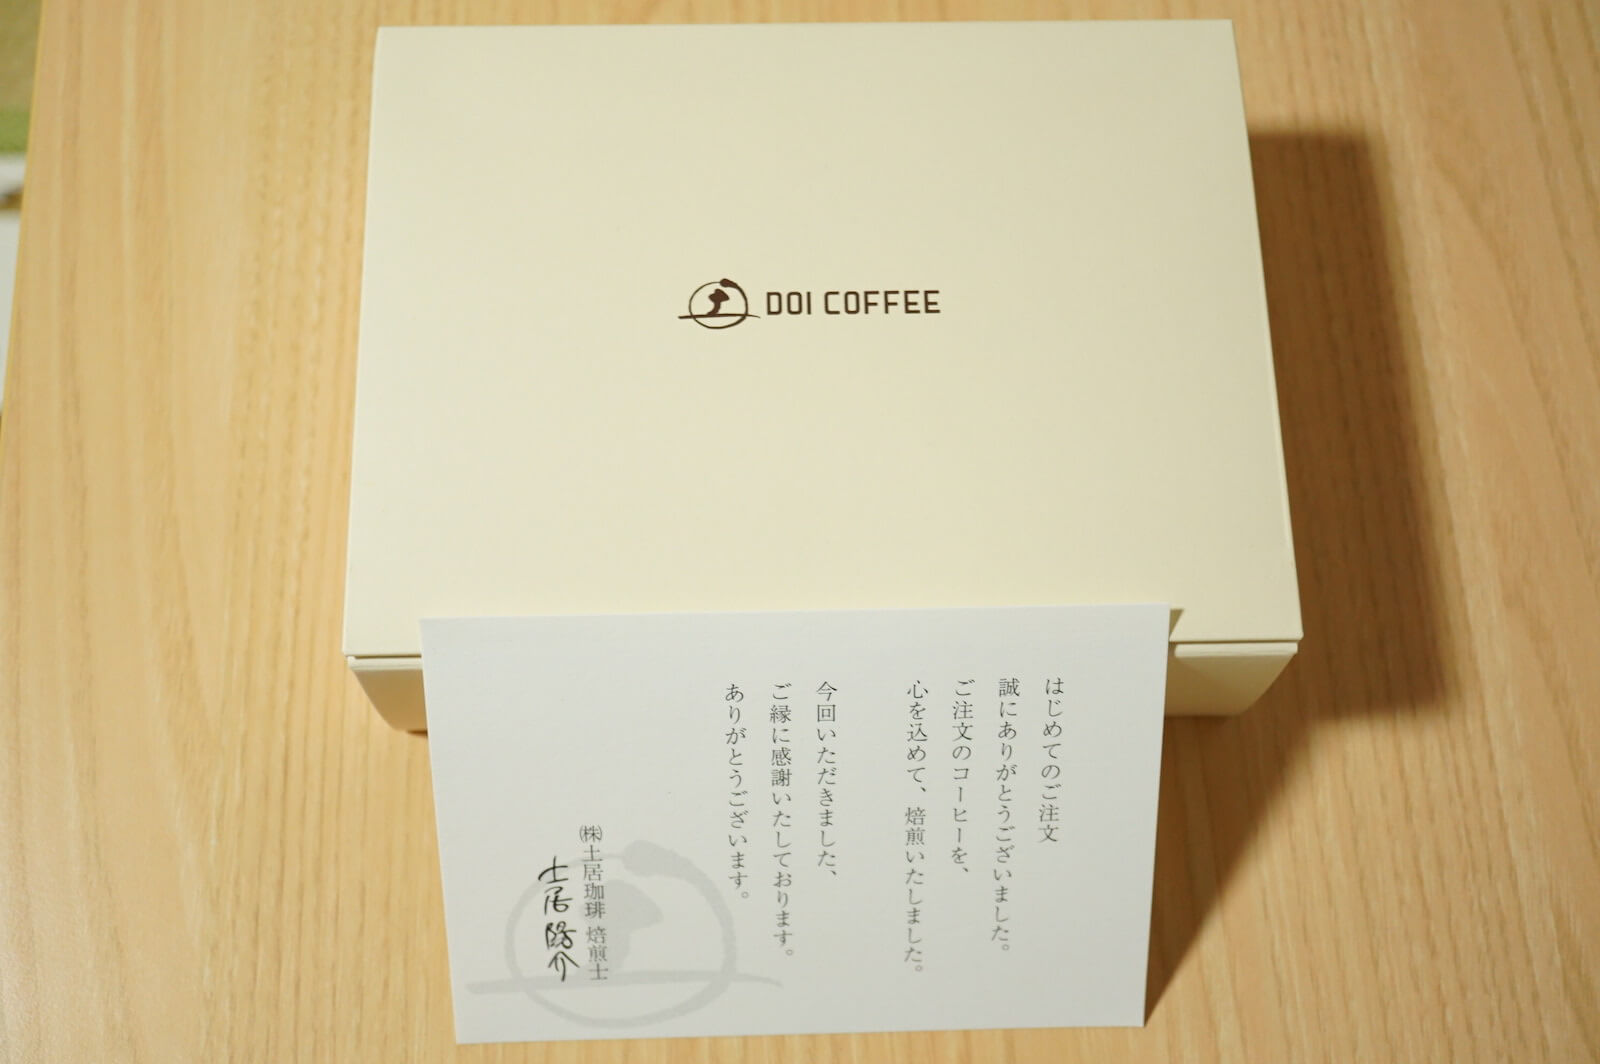 土居珈琲から届いたコーヒー豆